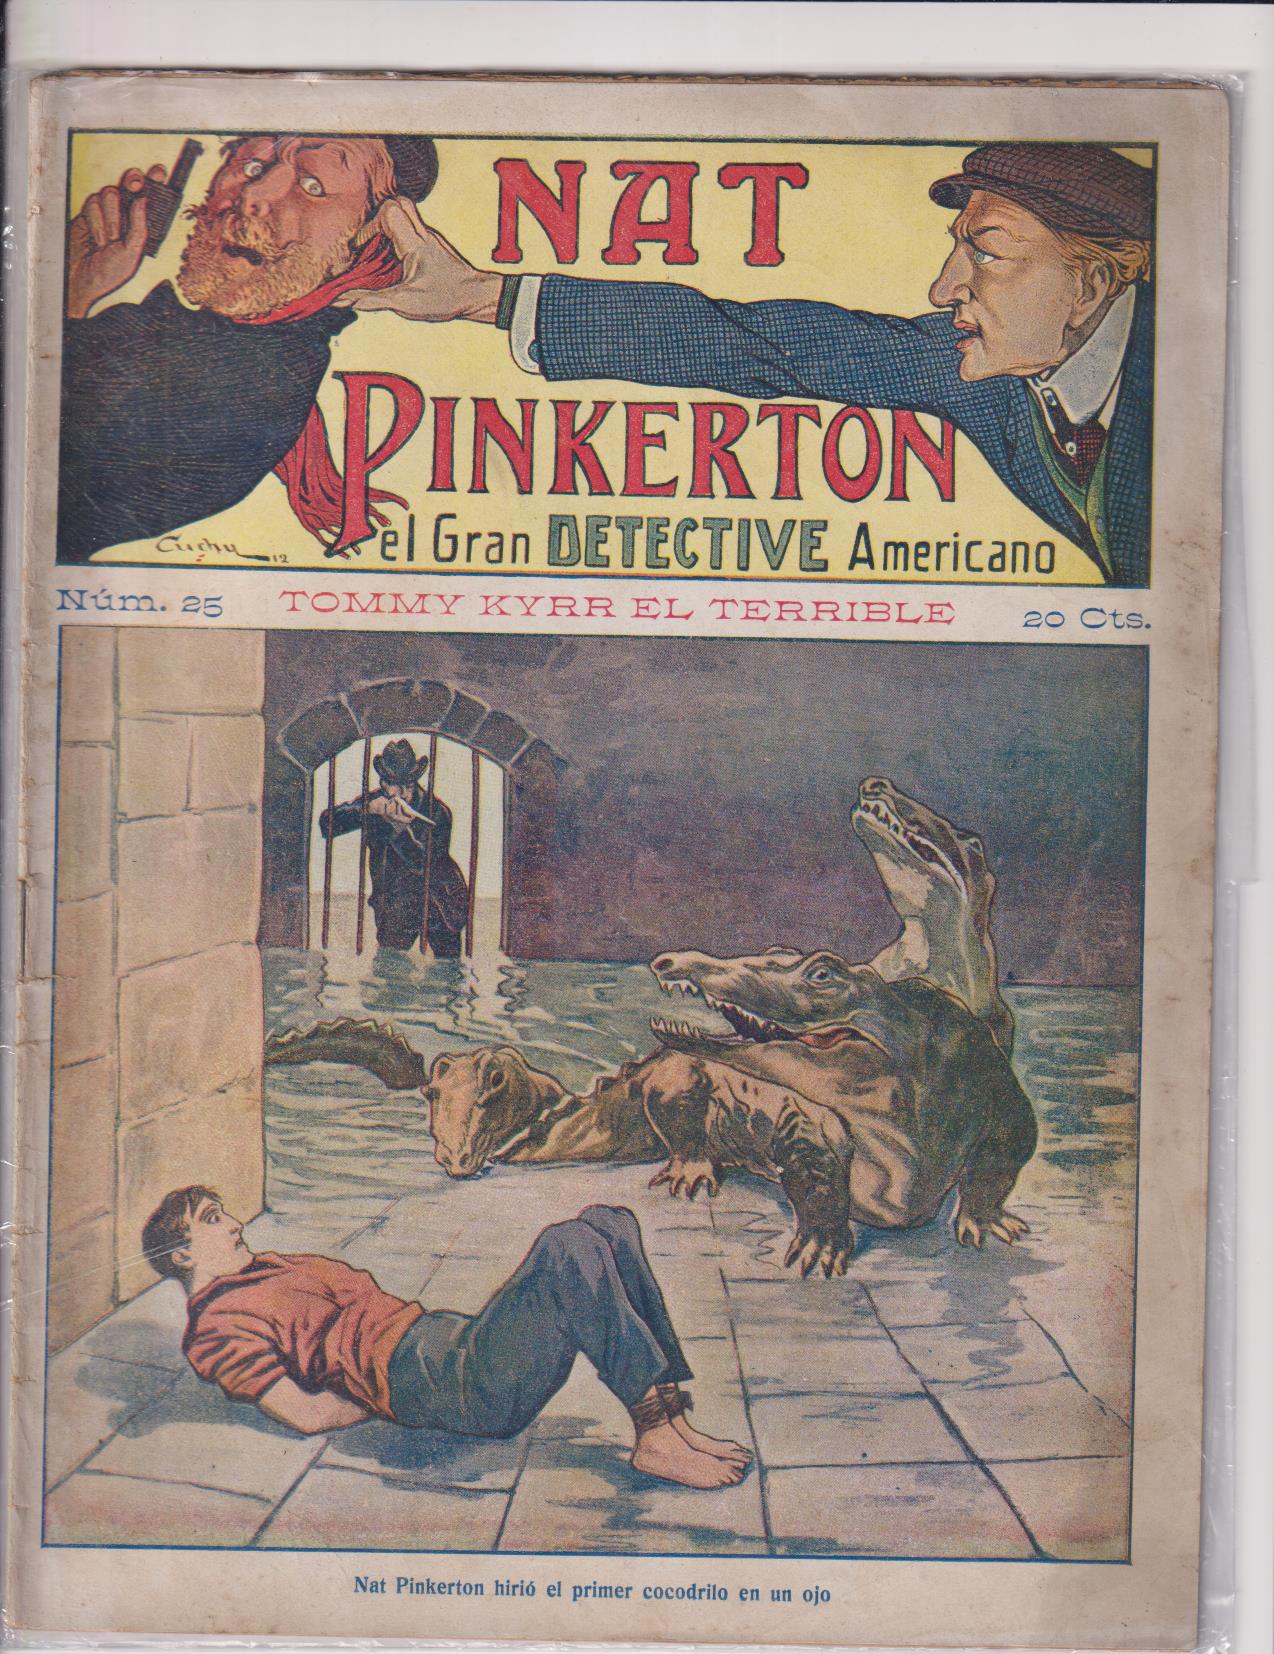 Nat Pinkerton. El Gran detective Americano nº 25. Seguí. (26x21) 31 p.p. con imágenes